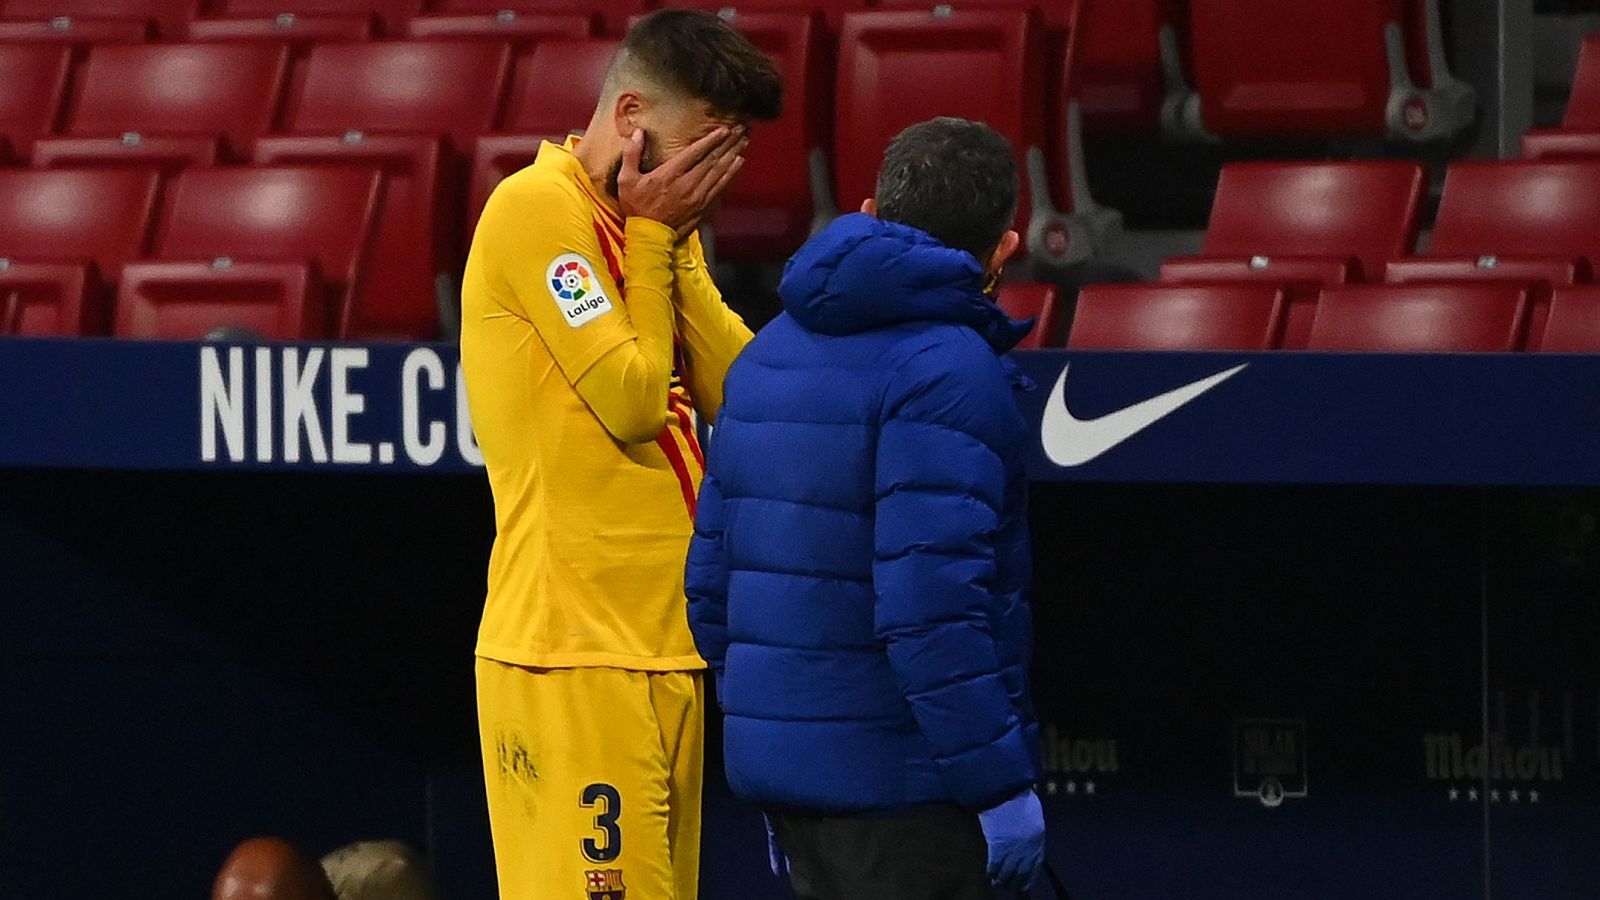  Gerard Piqué, jugador del FC Barcelona, se retira llorando tras sufrir una lesión en su rodilla durante el encuentro ante el Atlético de Madrid